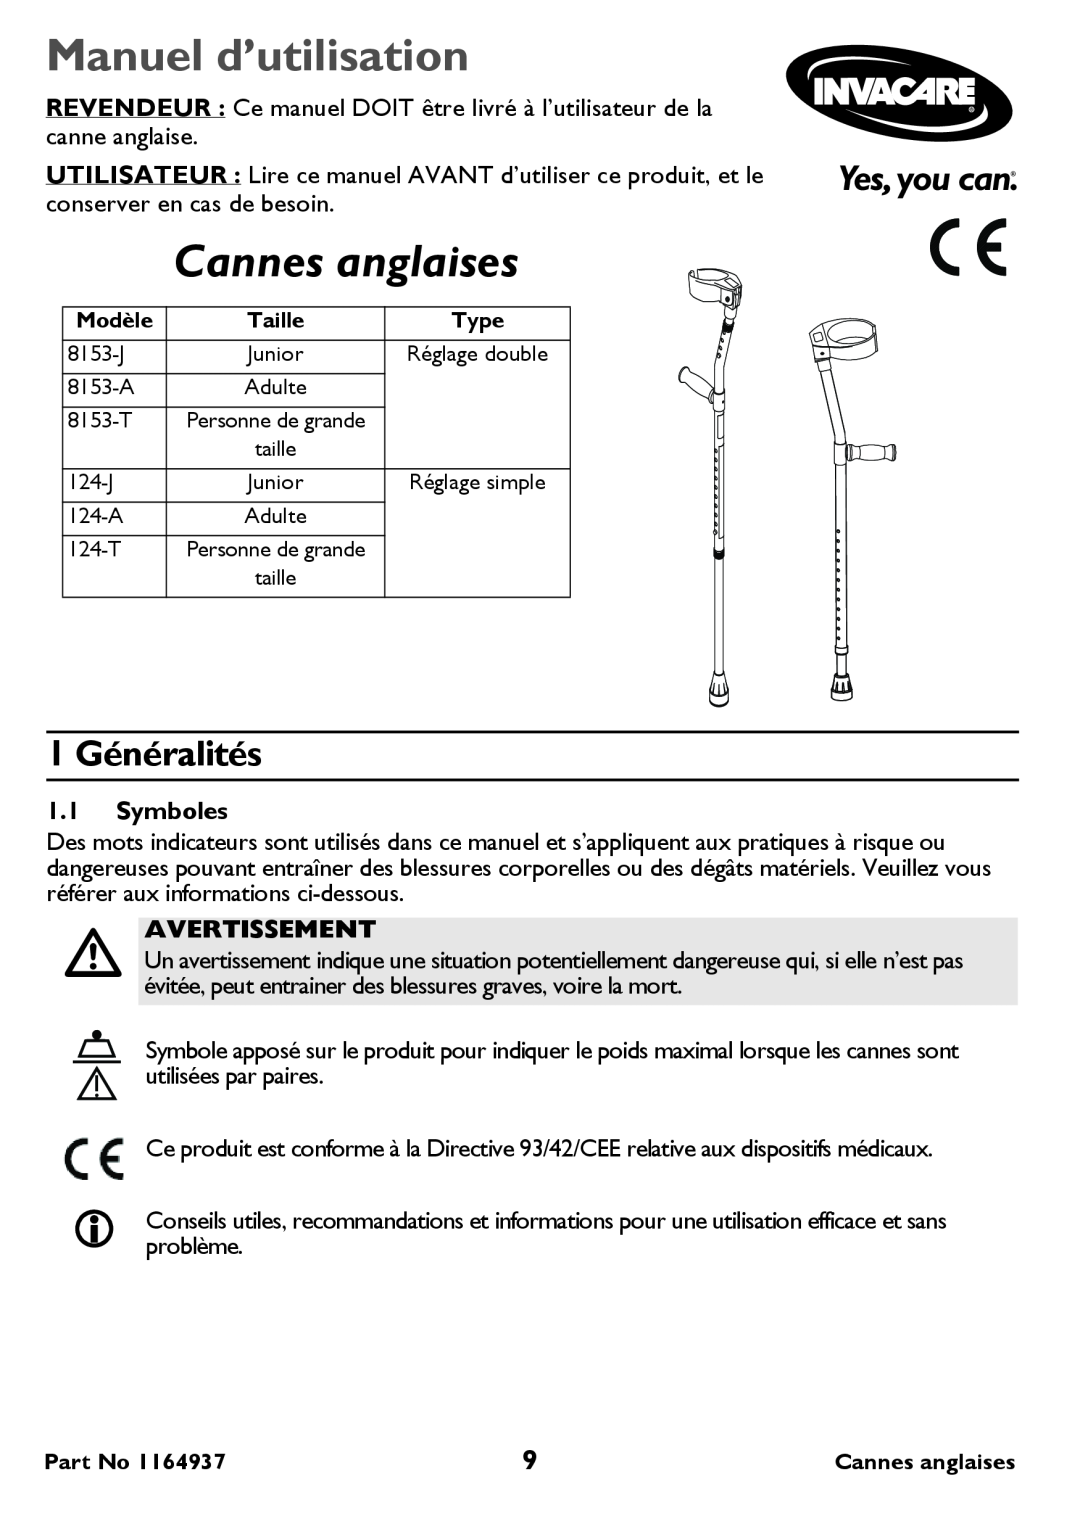 Invacare 124-T Tall, 8153-A Adult user manual Manuel d’utilisation, Cannes anglaises, 1 Généralités, Symboles, Avertissement 